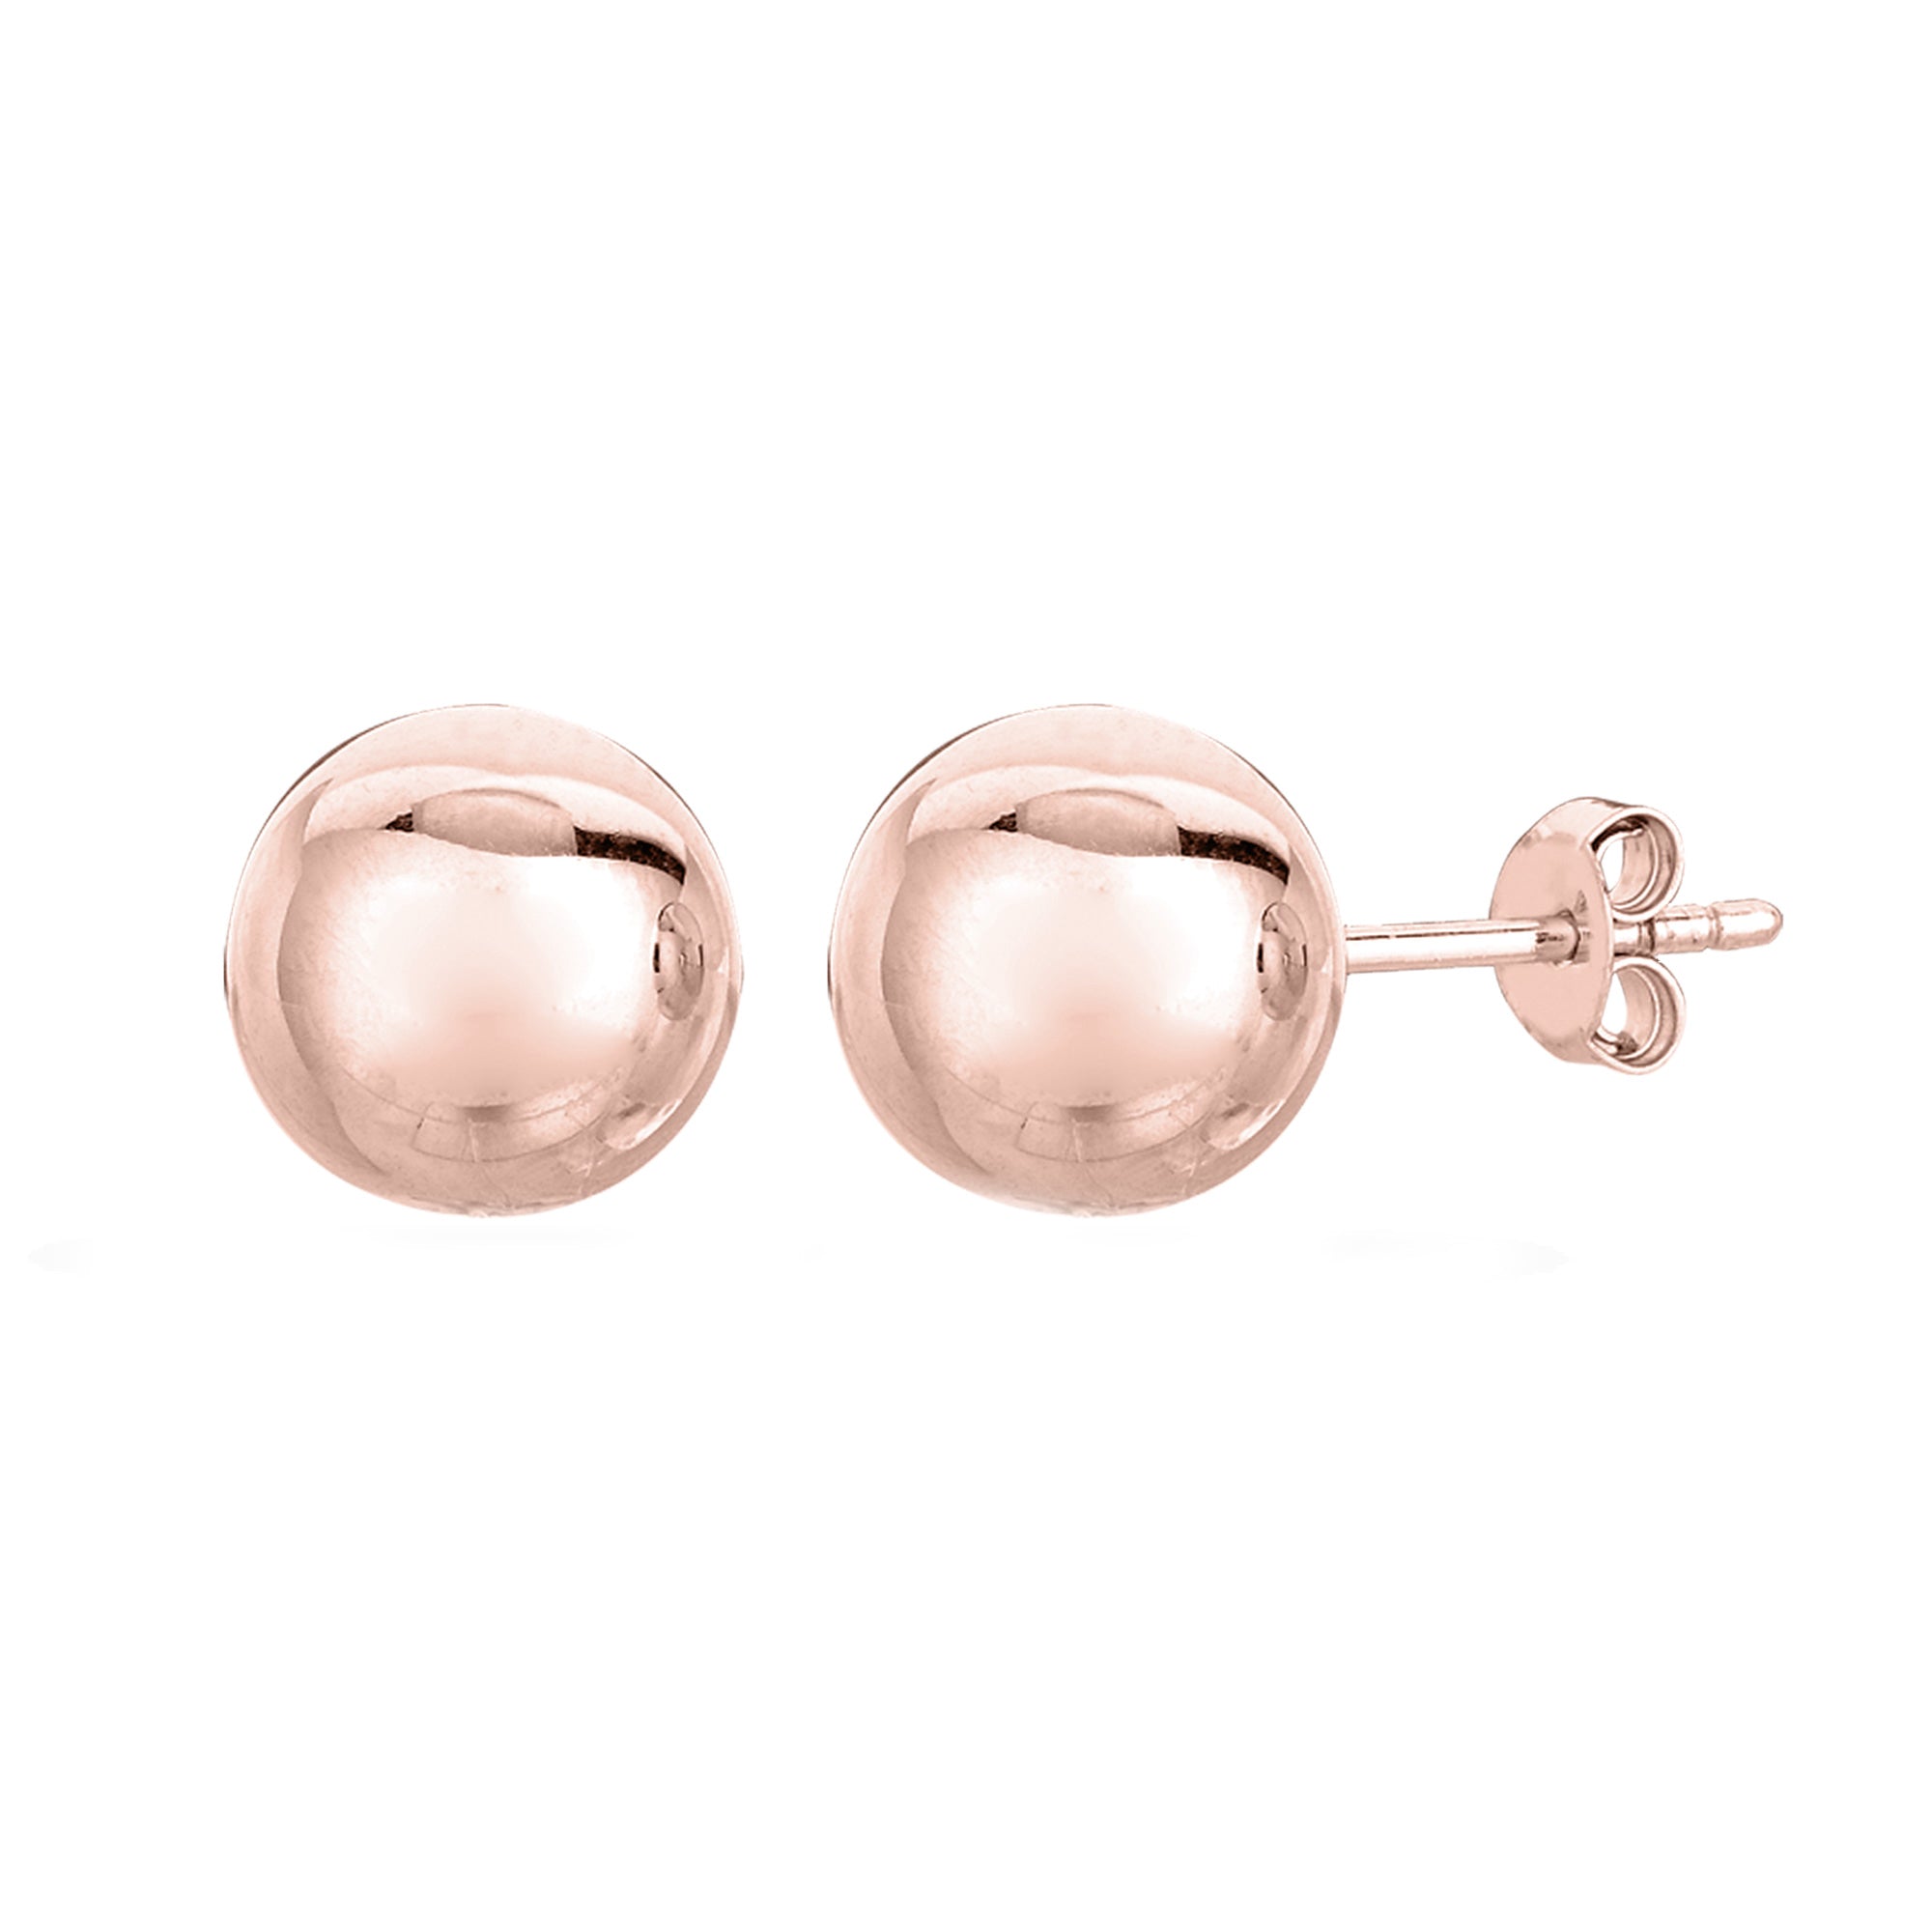 14K Rose Gold Ball Stud Earrings fine designer jewelry for men and women